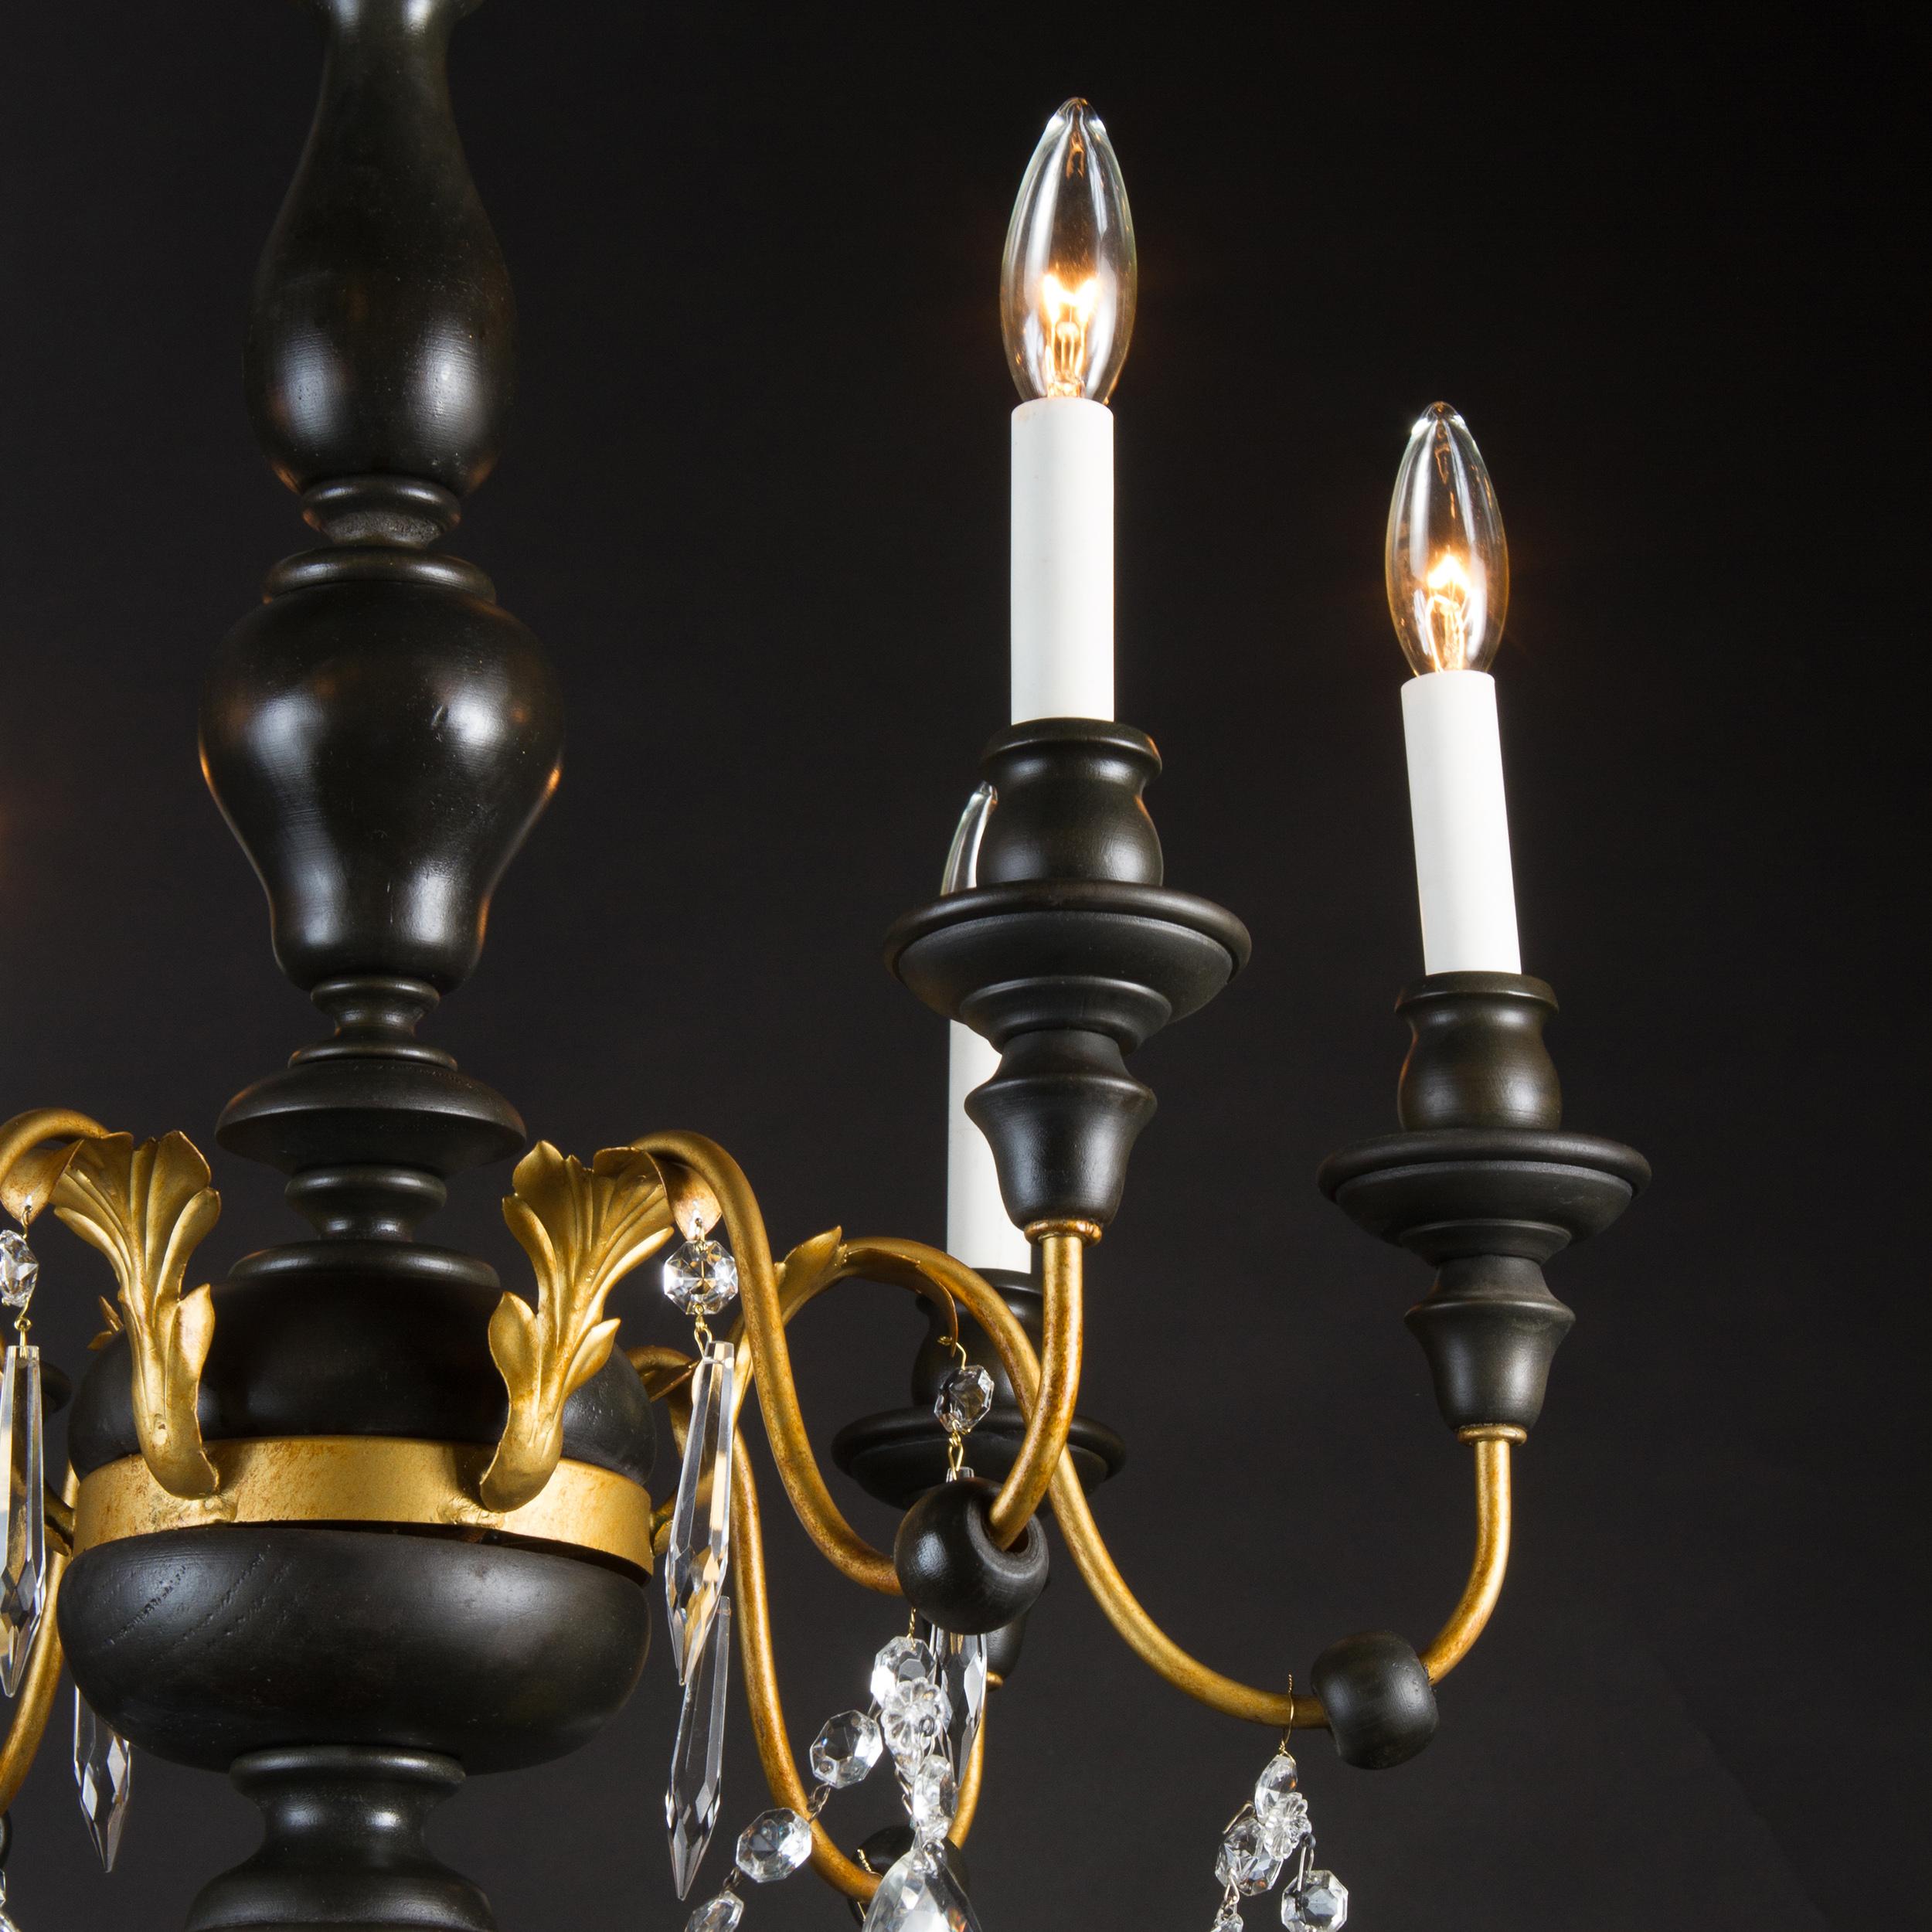 Dieser schlichte und elegante Kronleuchter aus der Mitte des 20. Jahrhunderts ist im Stil von Louis XVI. Die hauptsächlich aus Holz gefertigte und mit Kristall besetzte Leuchte verfügt außerdem über dekorative Elemente aus Eisen und Zinn, die sich